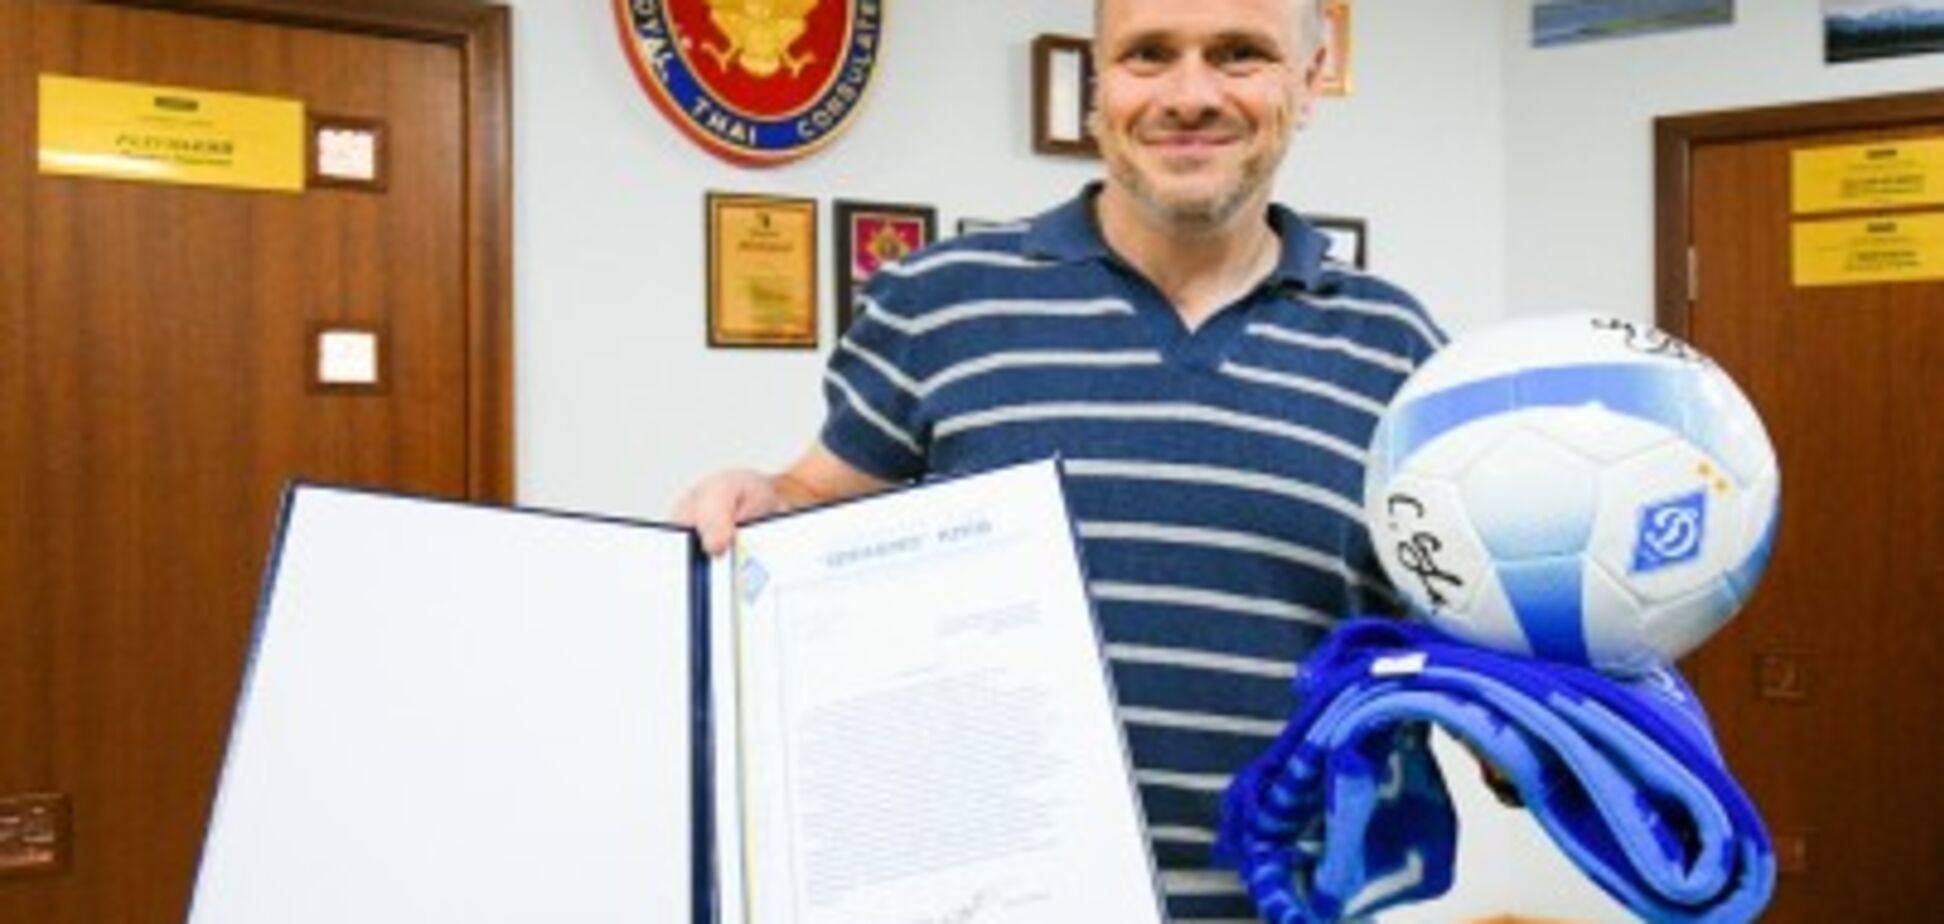 ФК 'Динамо' (Киев) выражает моральную поддержку самой смелой юношеской футбольной команде мира